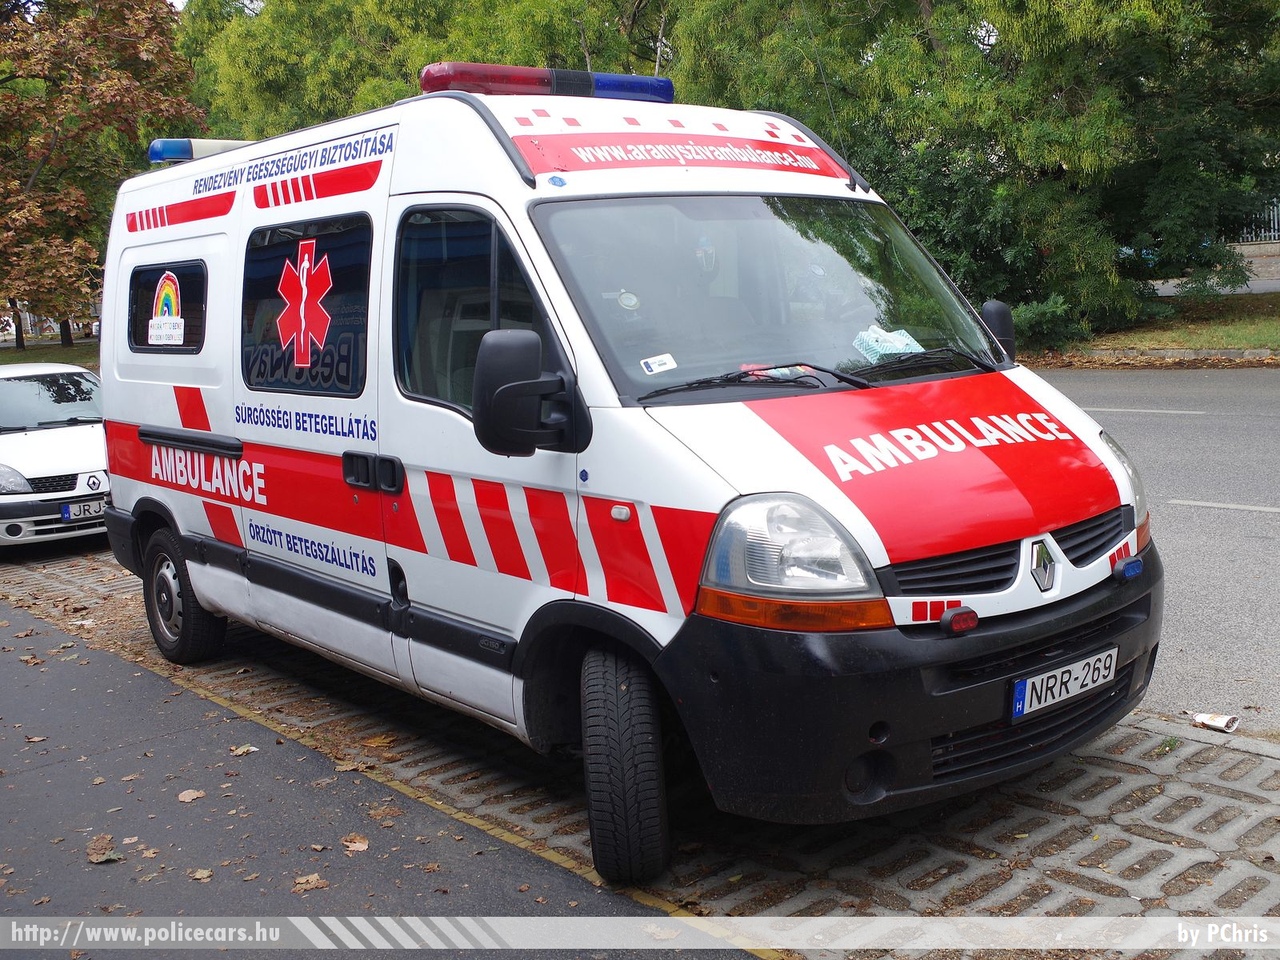 Renault Master, Aranyszív Ambulance Kft., fotó: PChris
Keywords: mentő mentőautó magyar Magyarország hungarian Hungary ambulance NRR-269